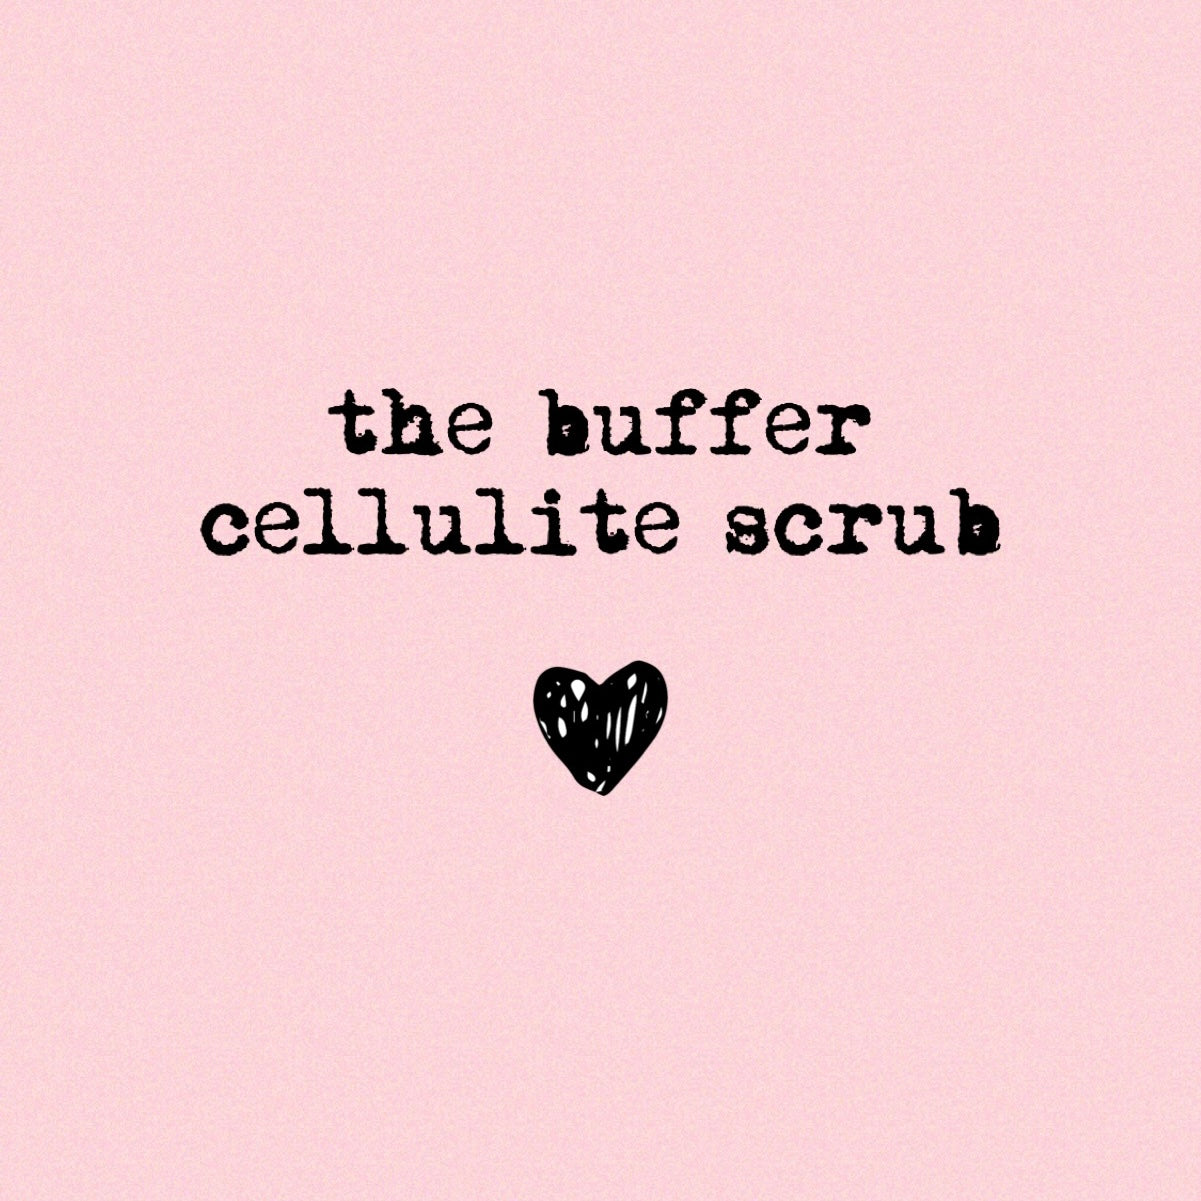 THE BUFFER (cellulite scrub)